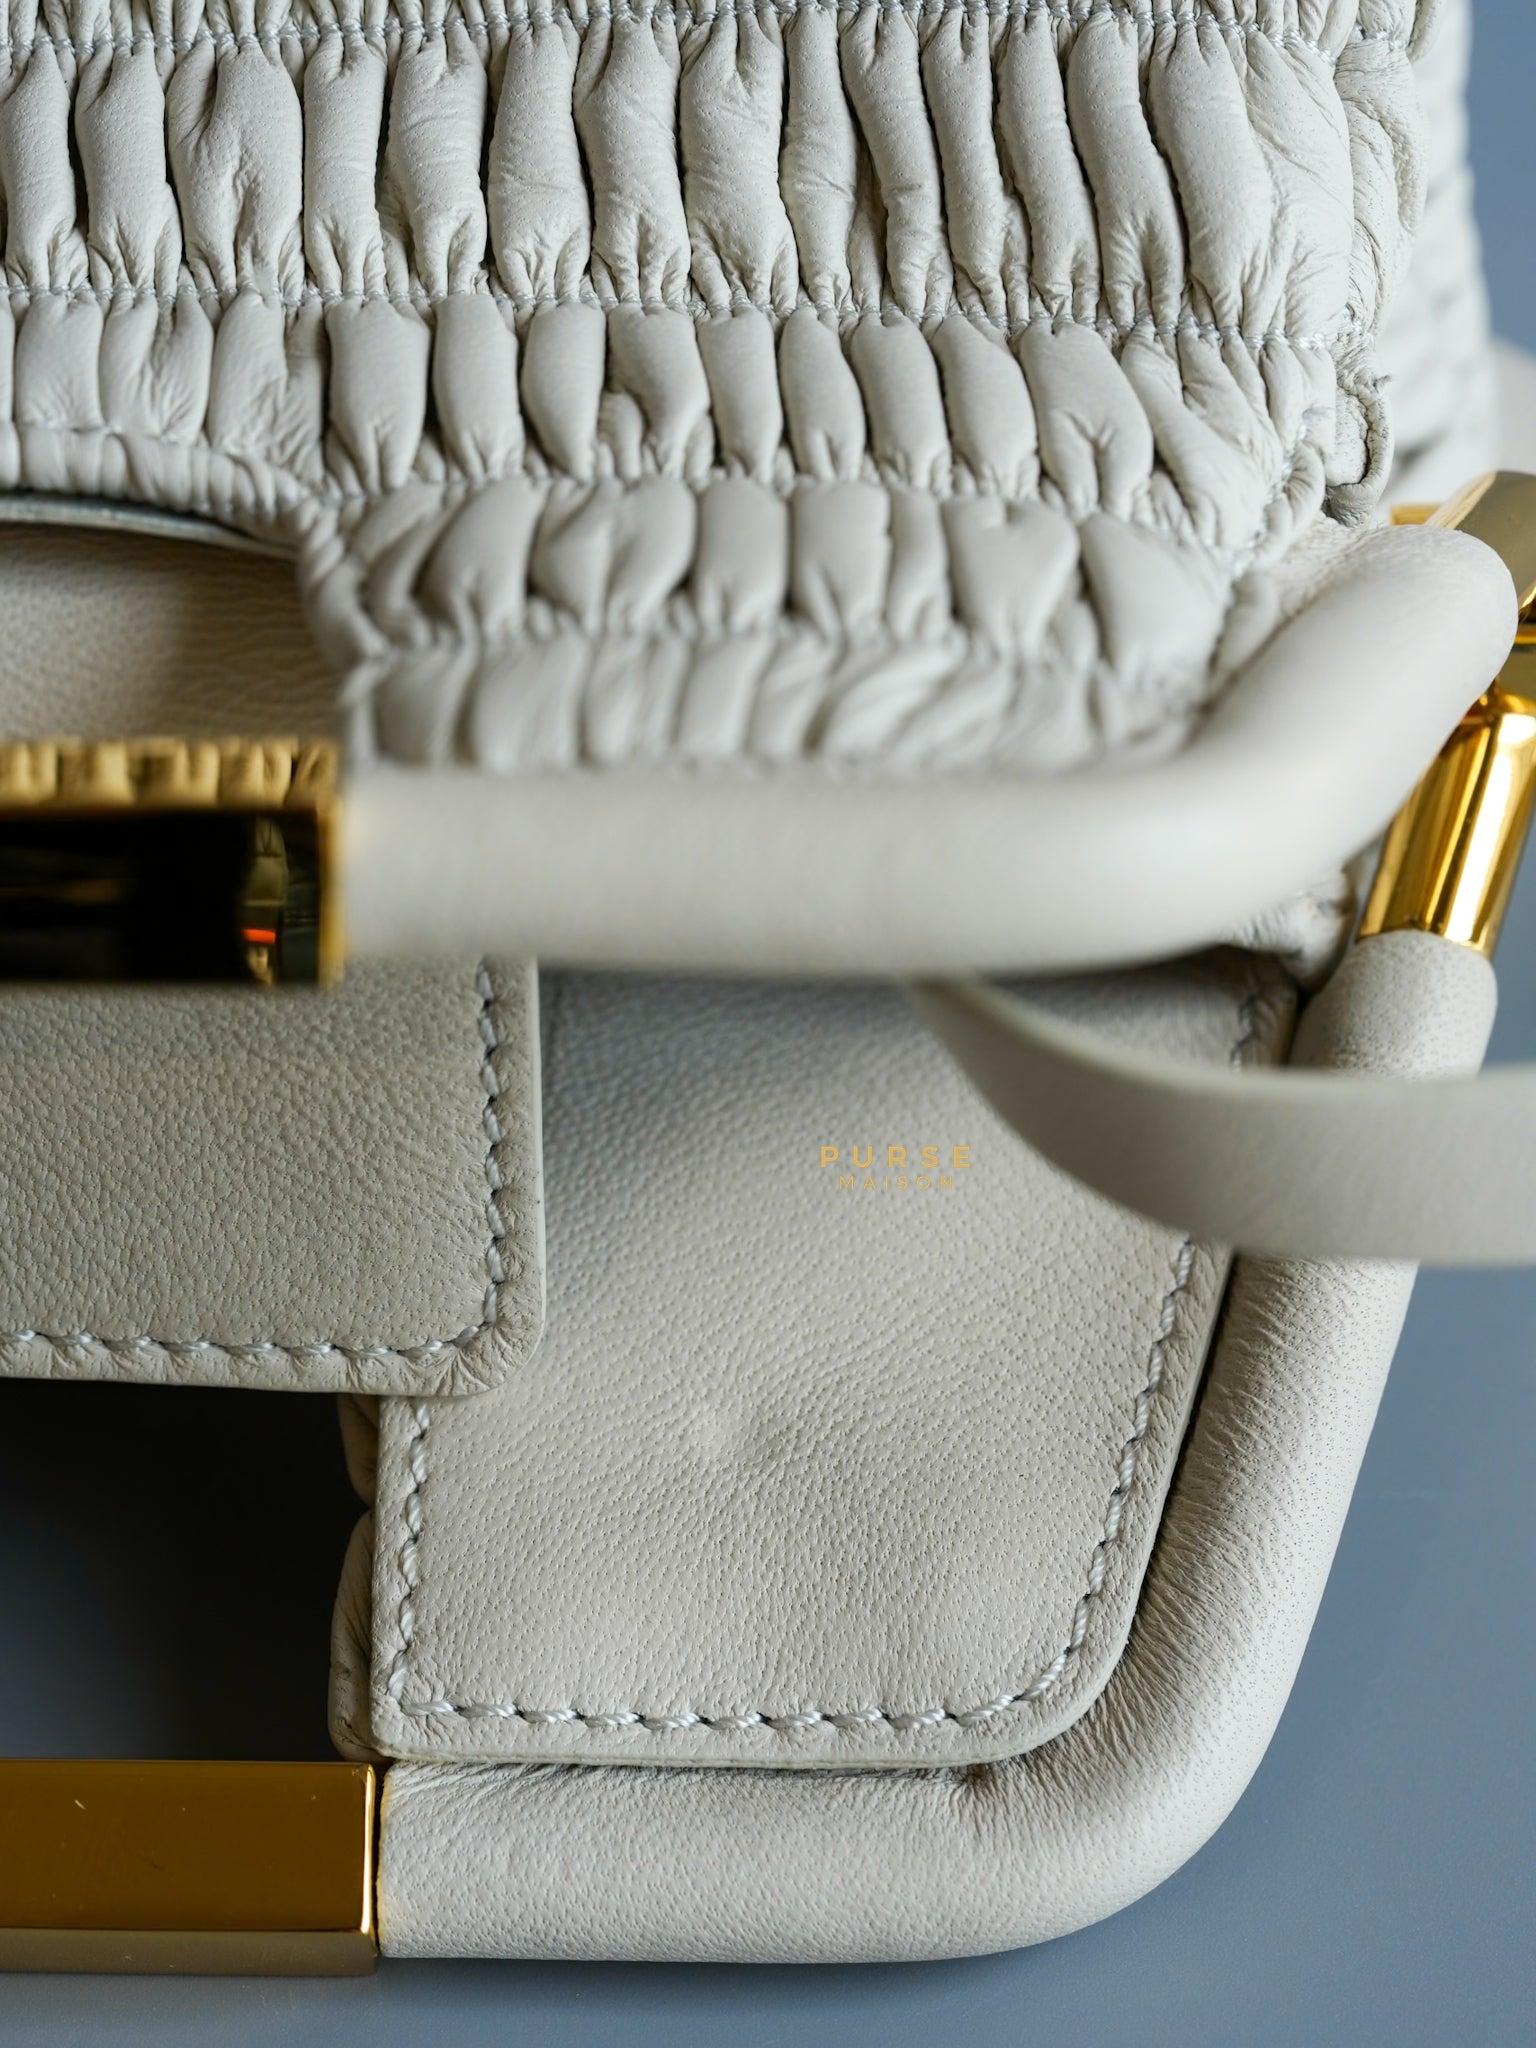 Demellier Mini Seville Crème White Matelasse Clutch | Purse Maison Luxury Bags Shop